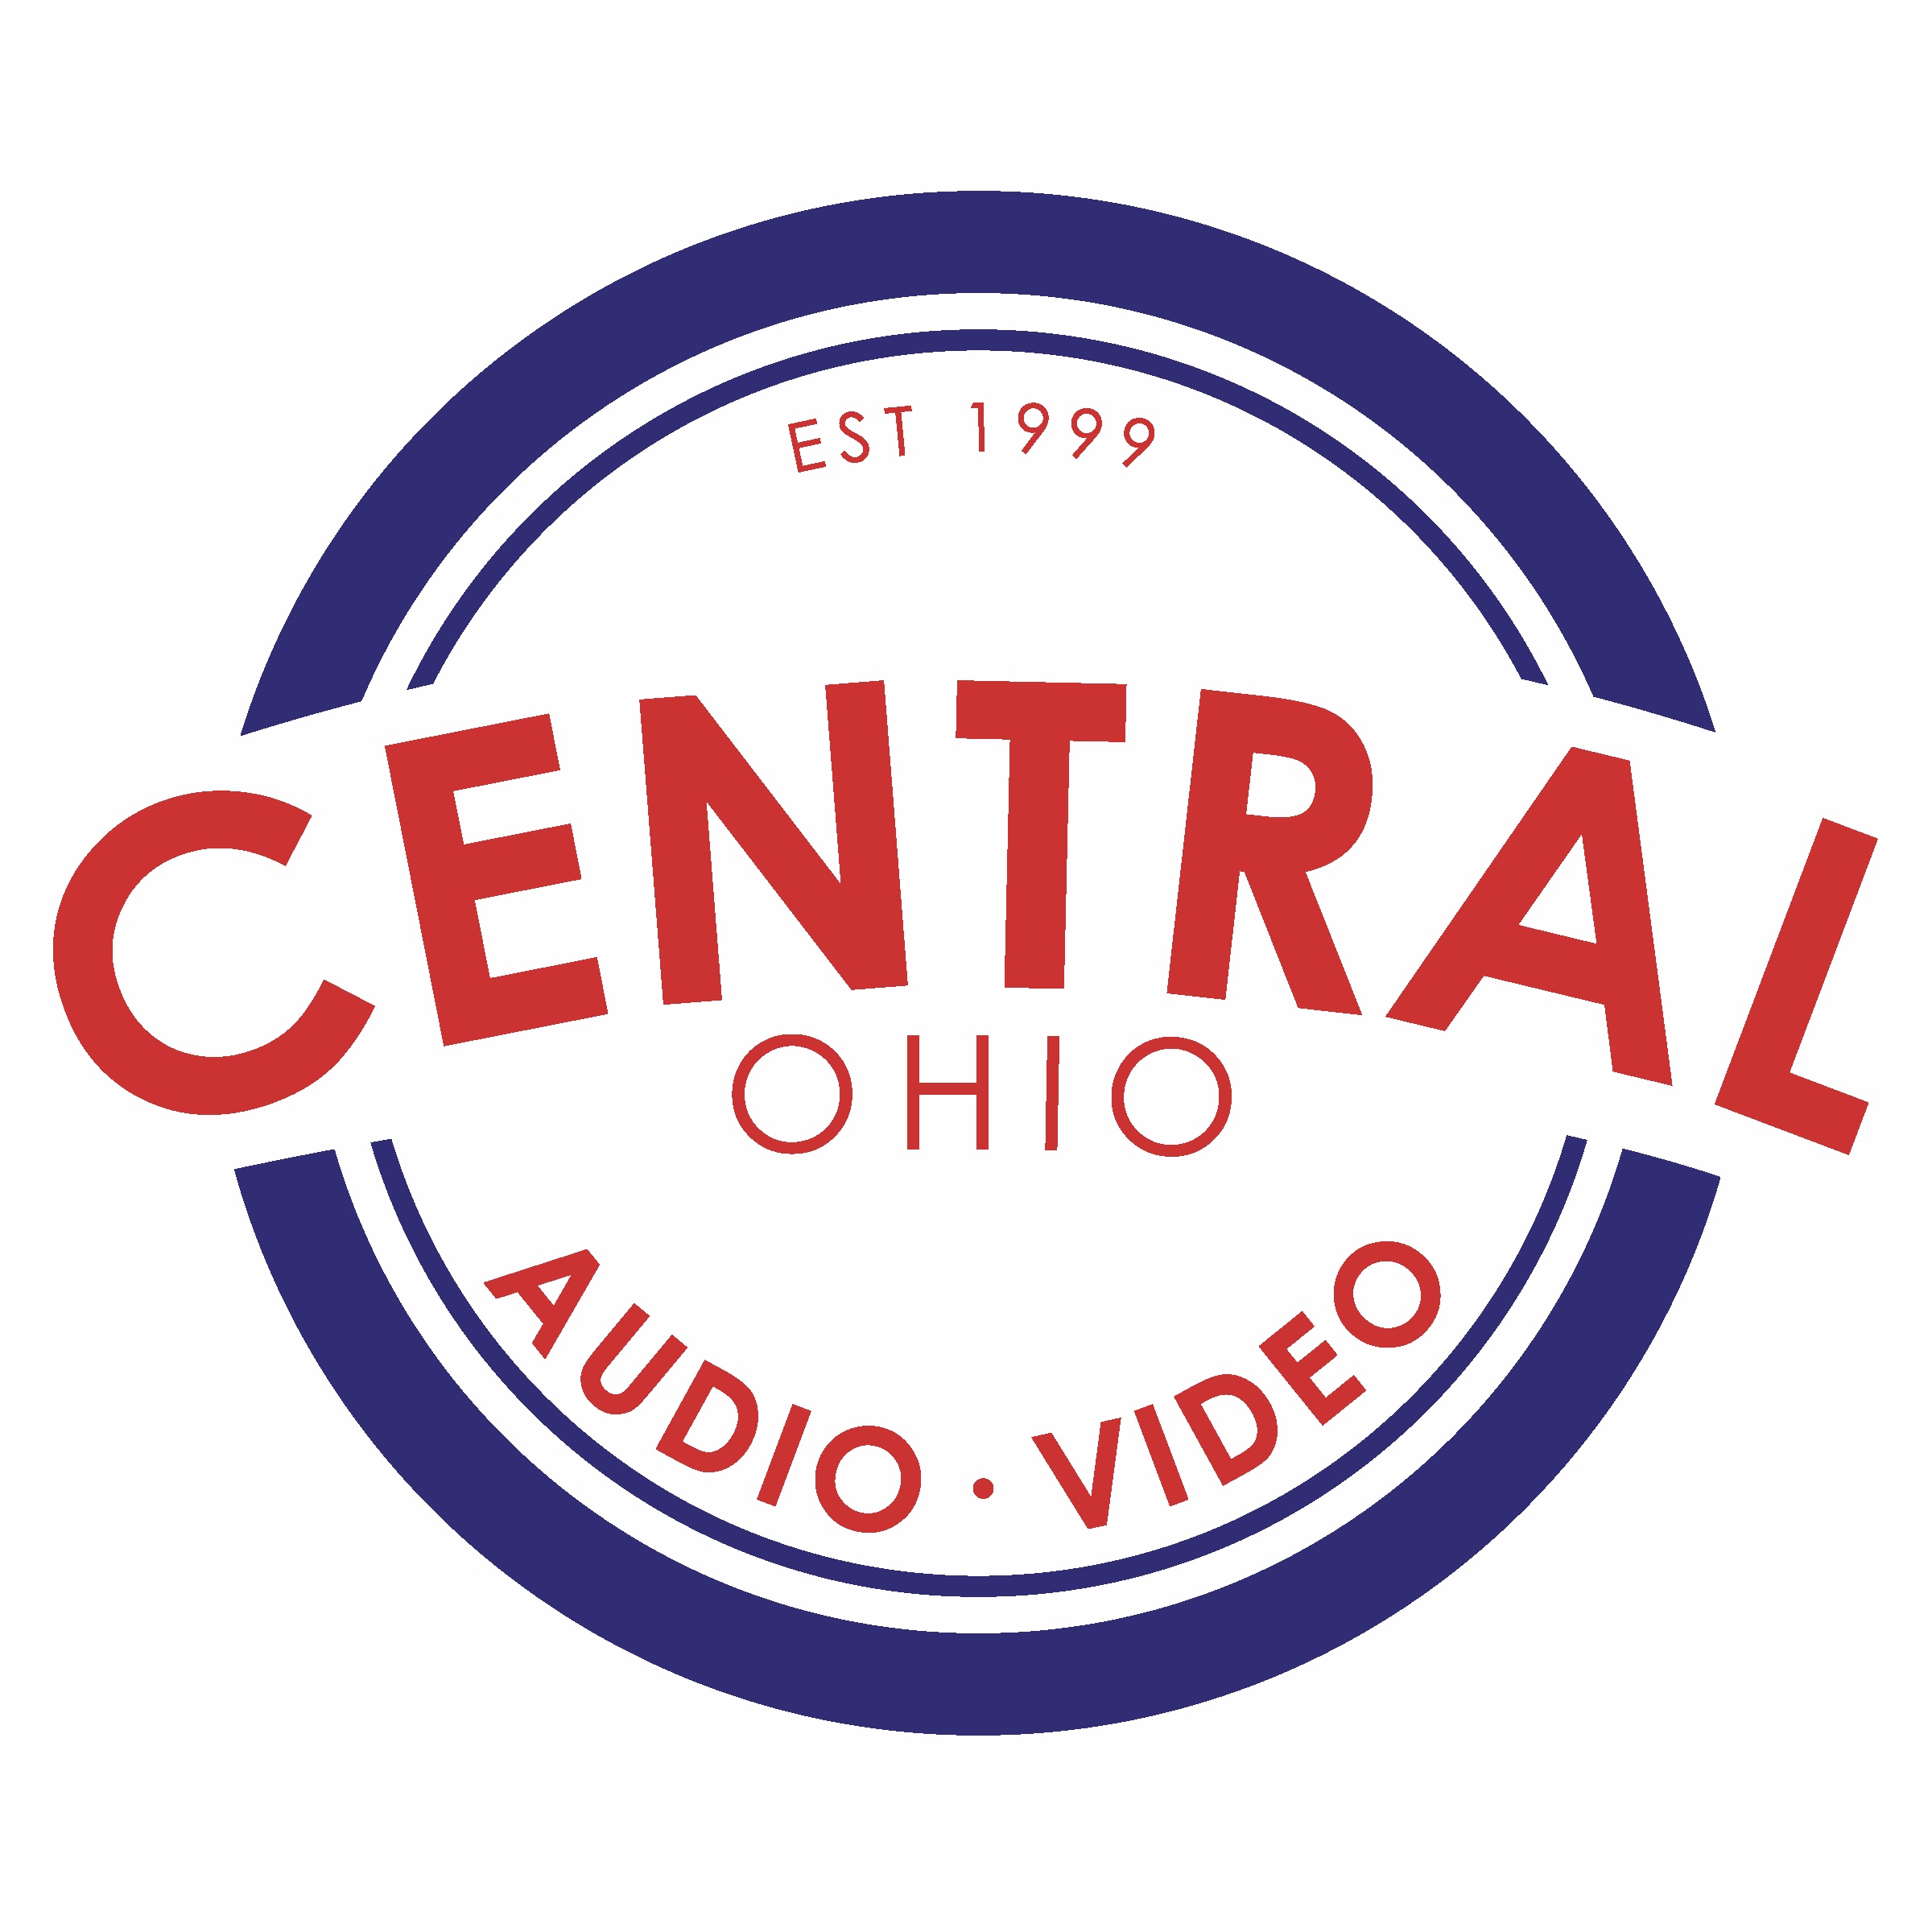 Central Ohio Audio & Video